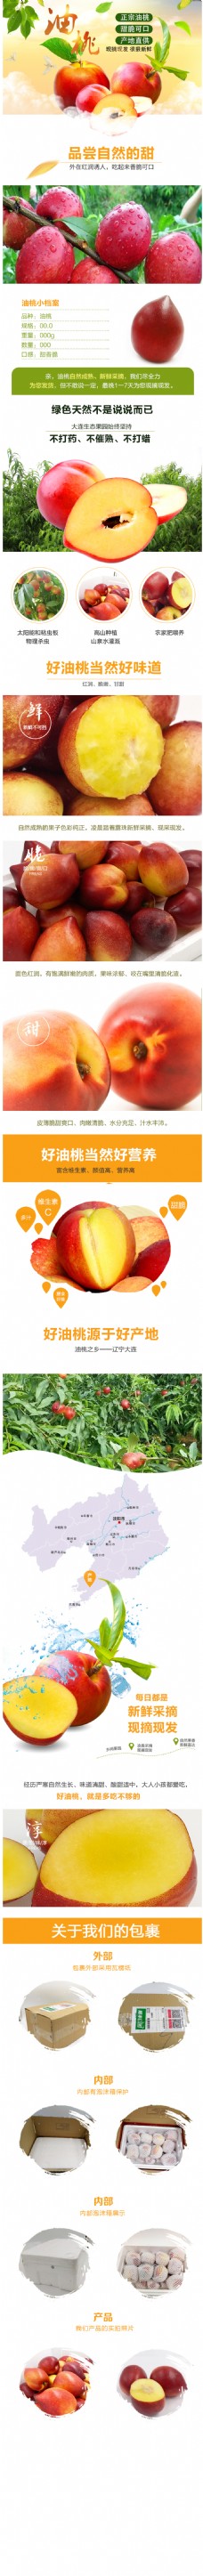 淘宝 天猫电商水果促销简洁油桃详情页模板